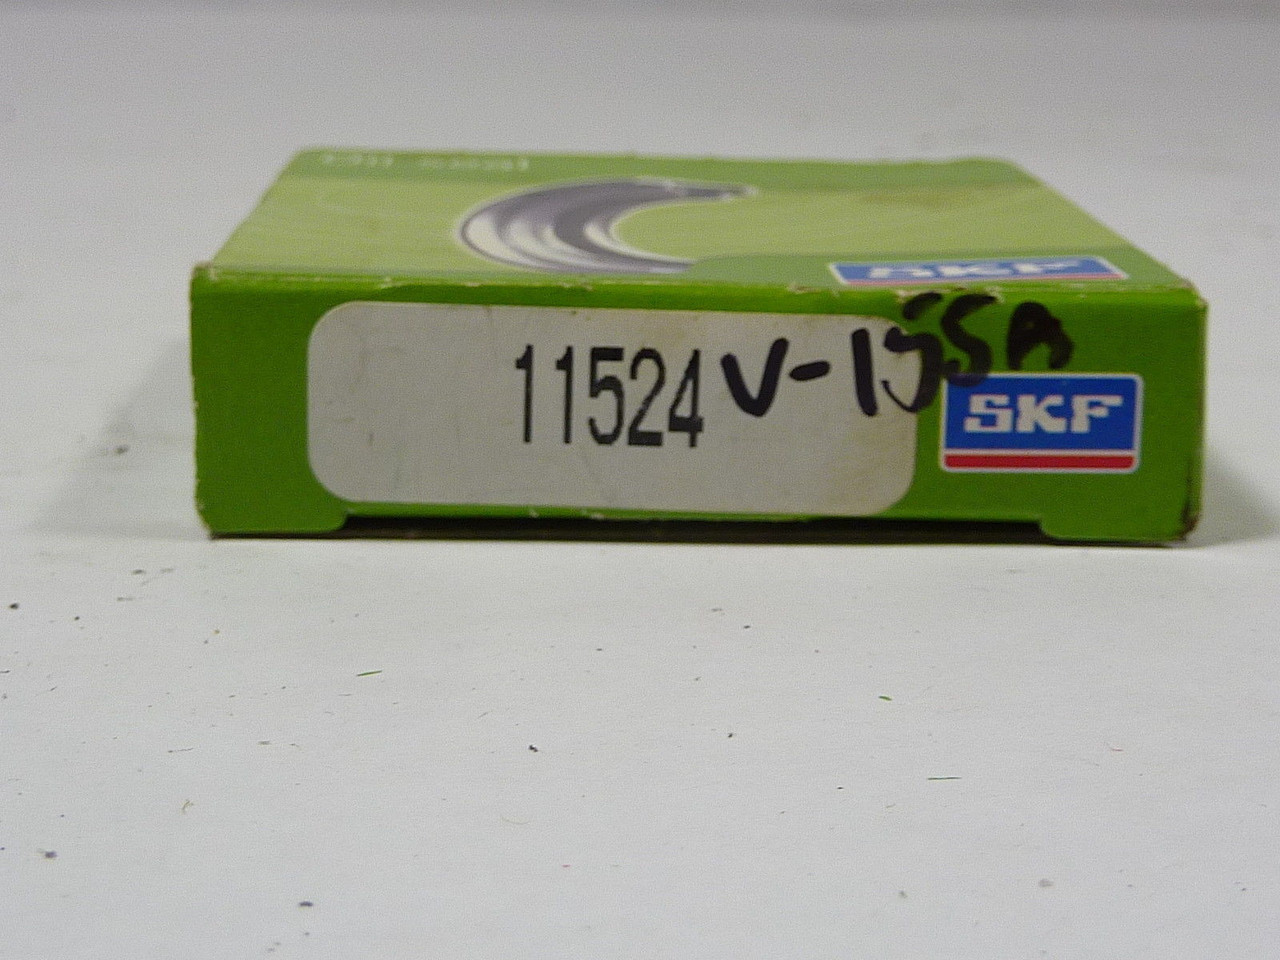 SKF 11524 Single Lip Oil Seal 1-5/32x1.874x1/4 Inch ! NEW !